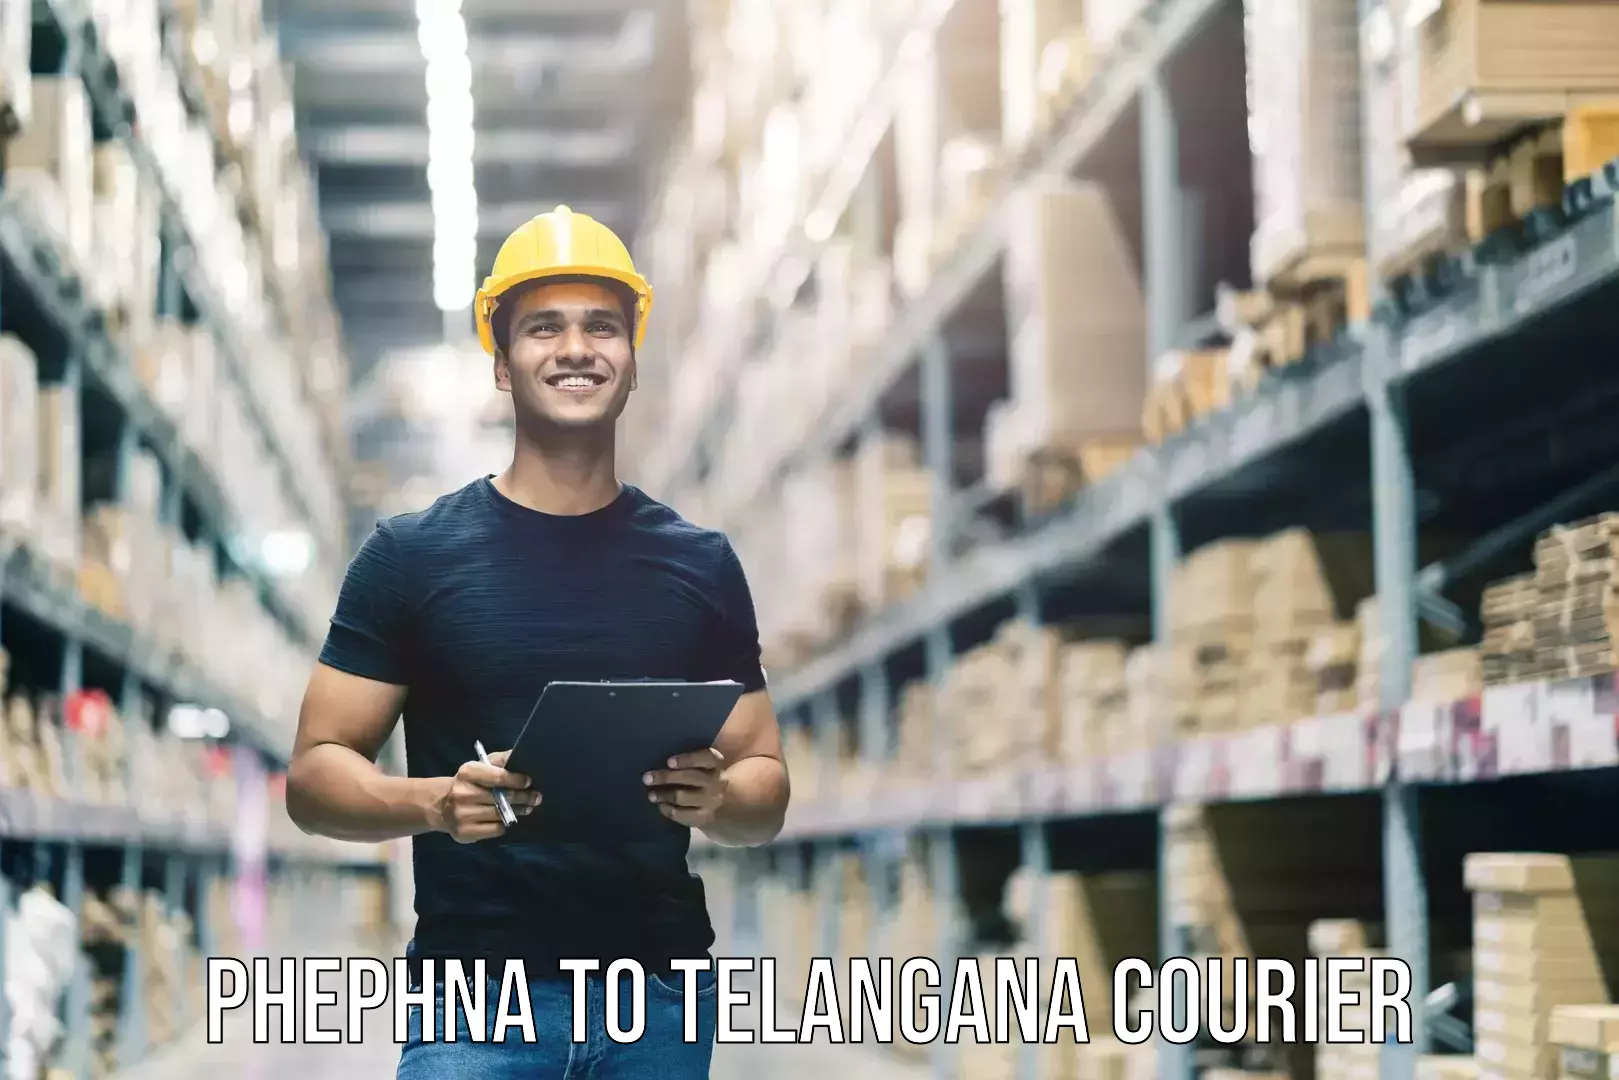 Luggage shipping strategy Phephna to Telangana